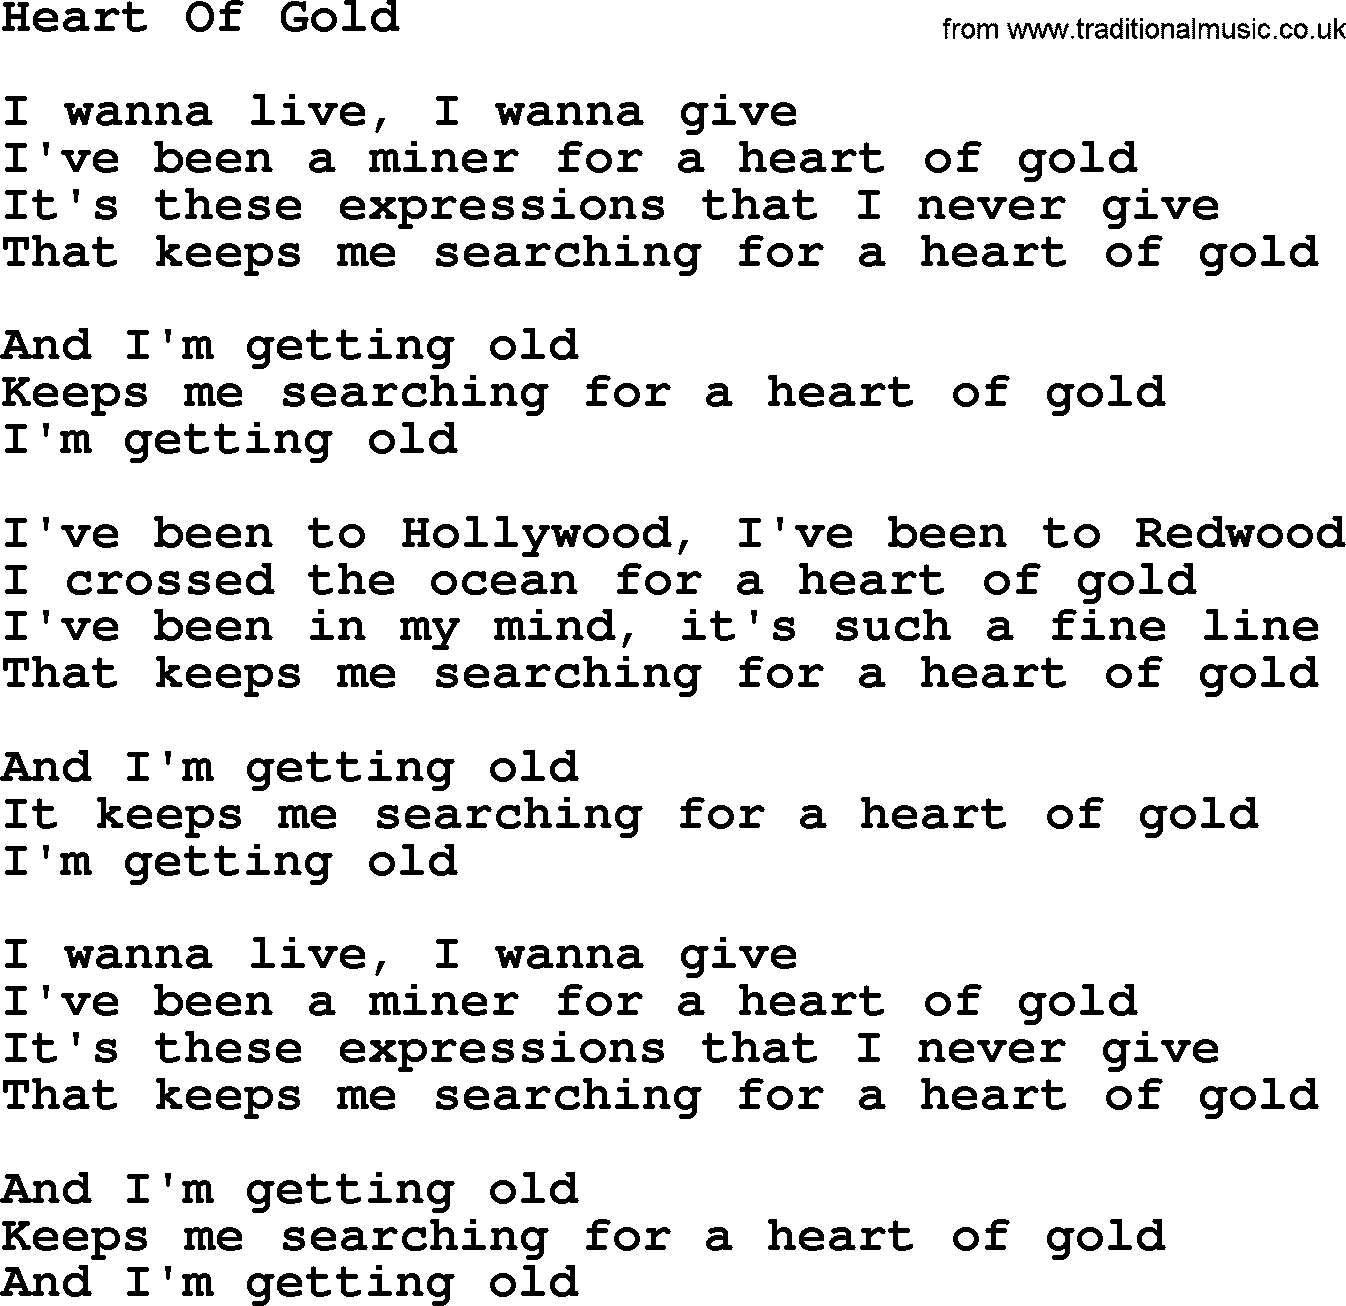 Willie Nelson song: Heart Of Gold lyrics